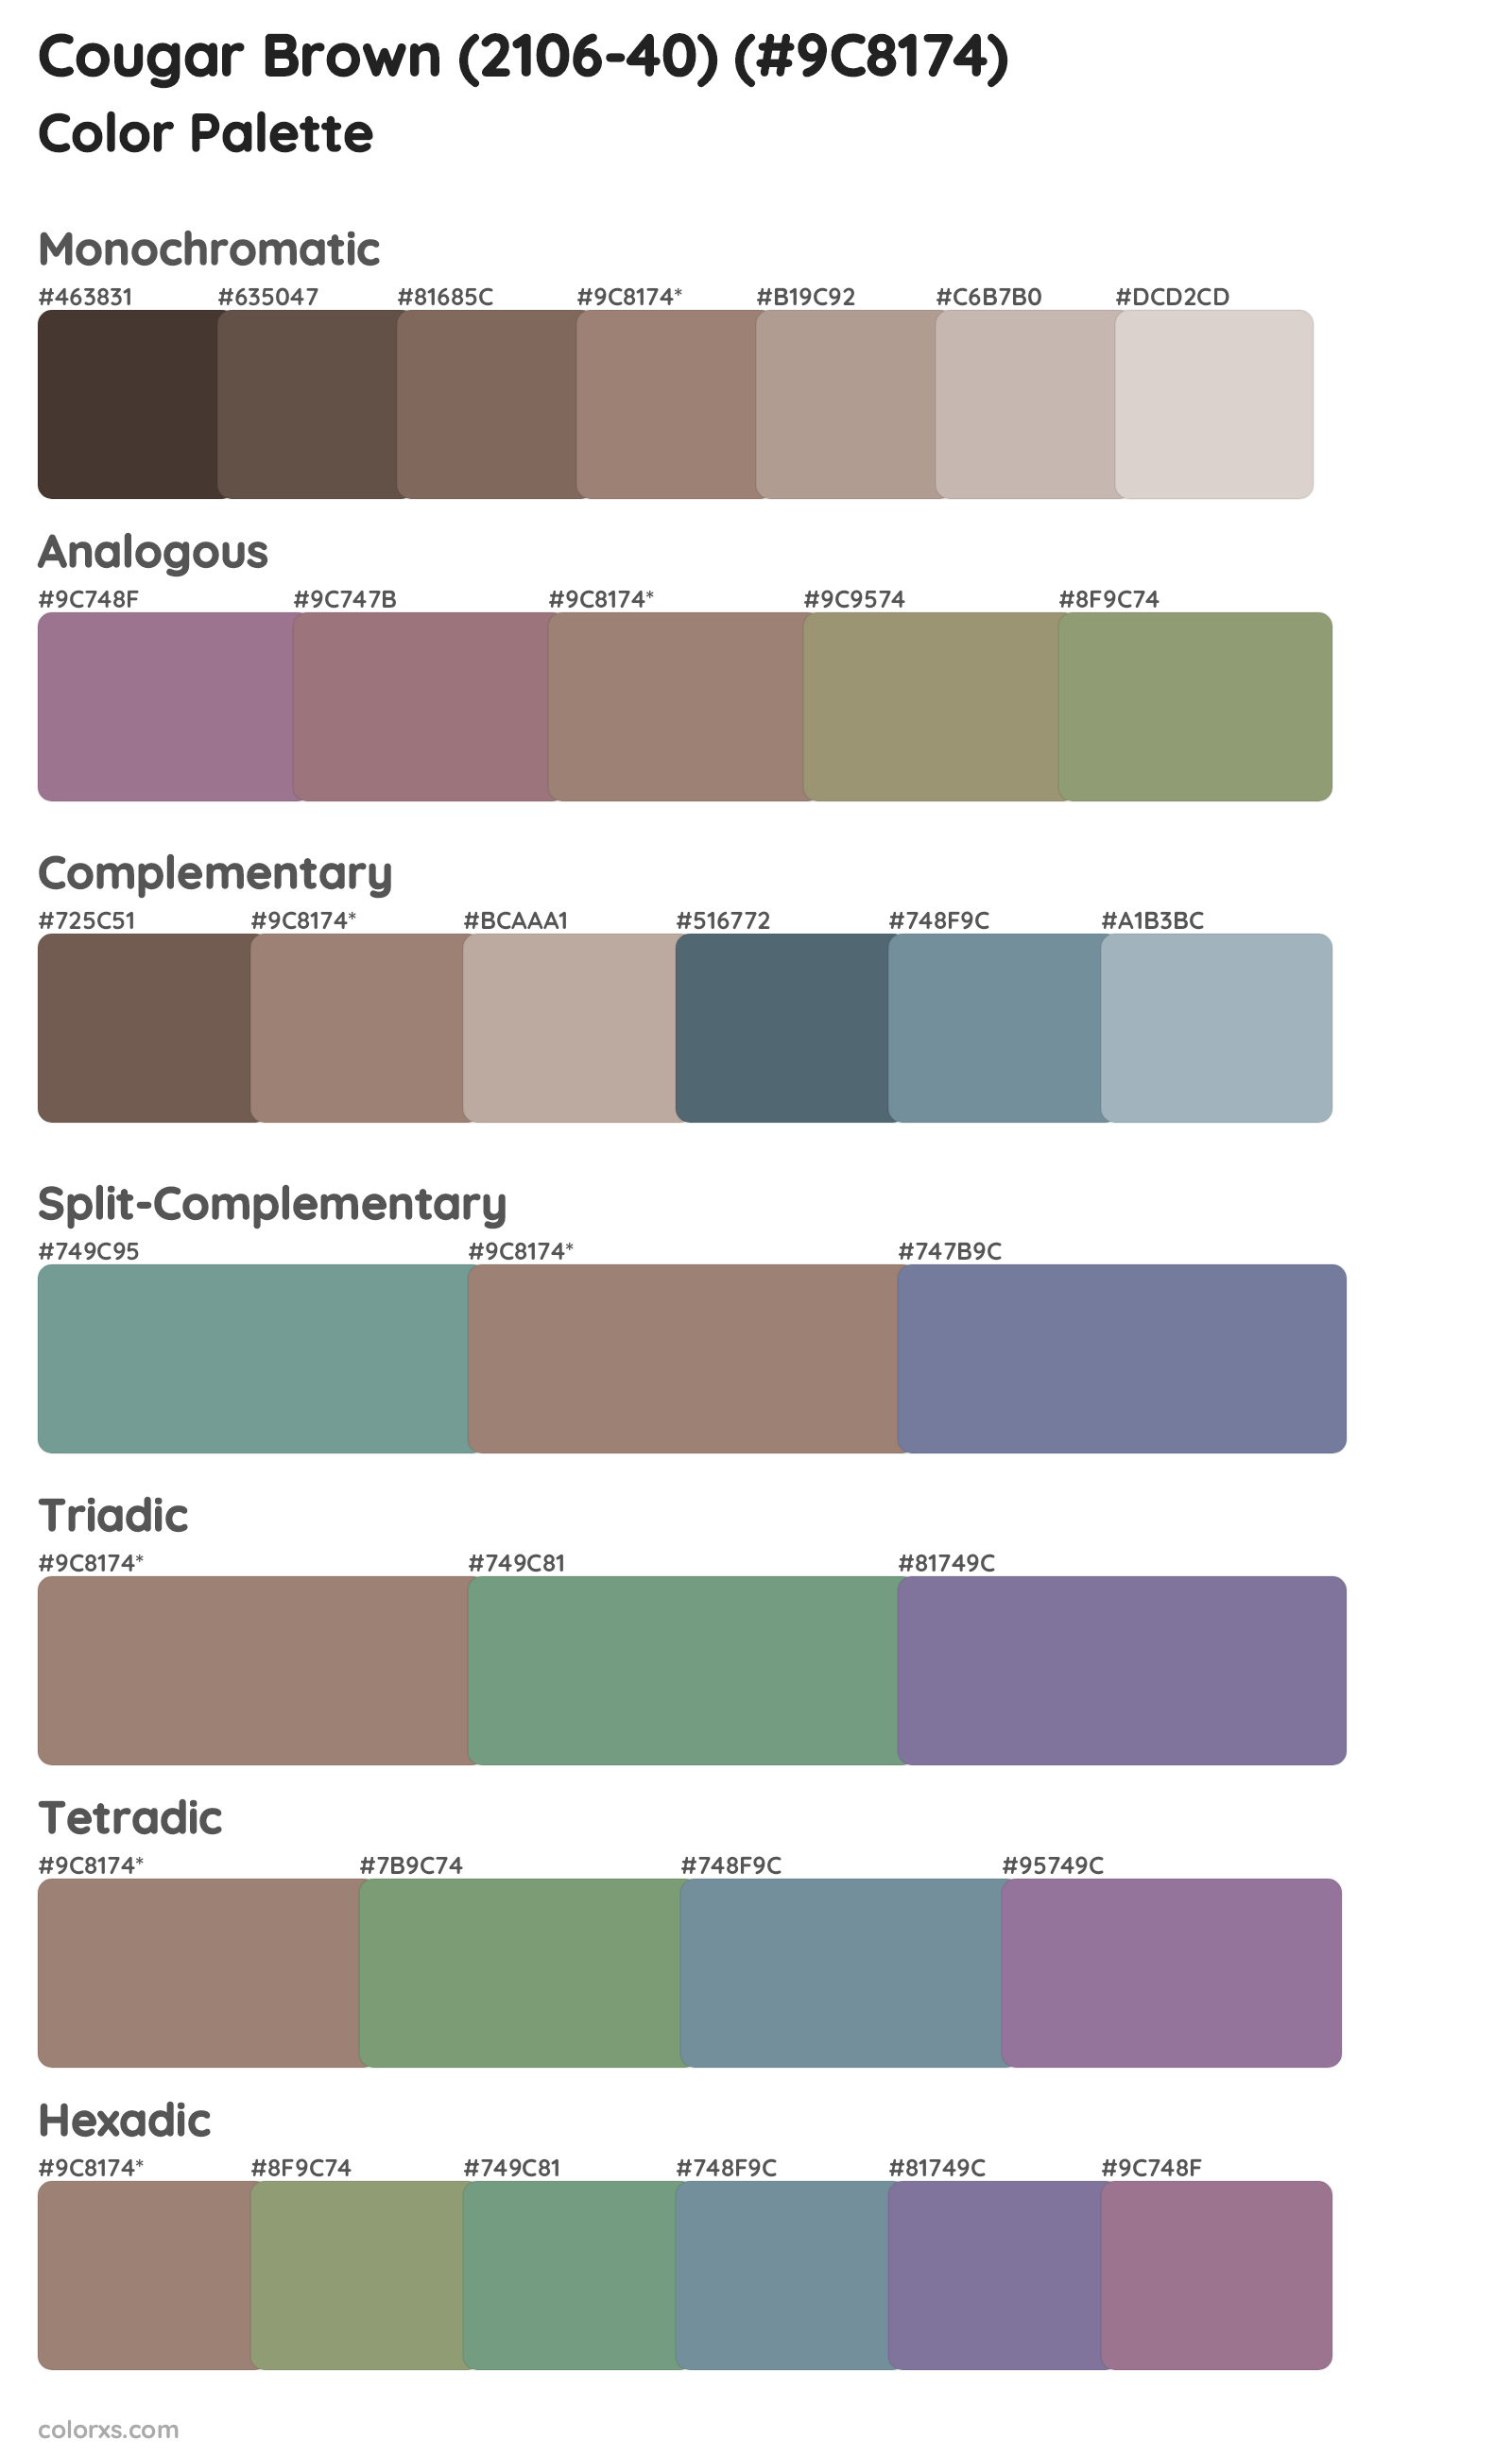 Cougar Brown (2106-40) Color Scheme Palettes